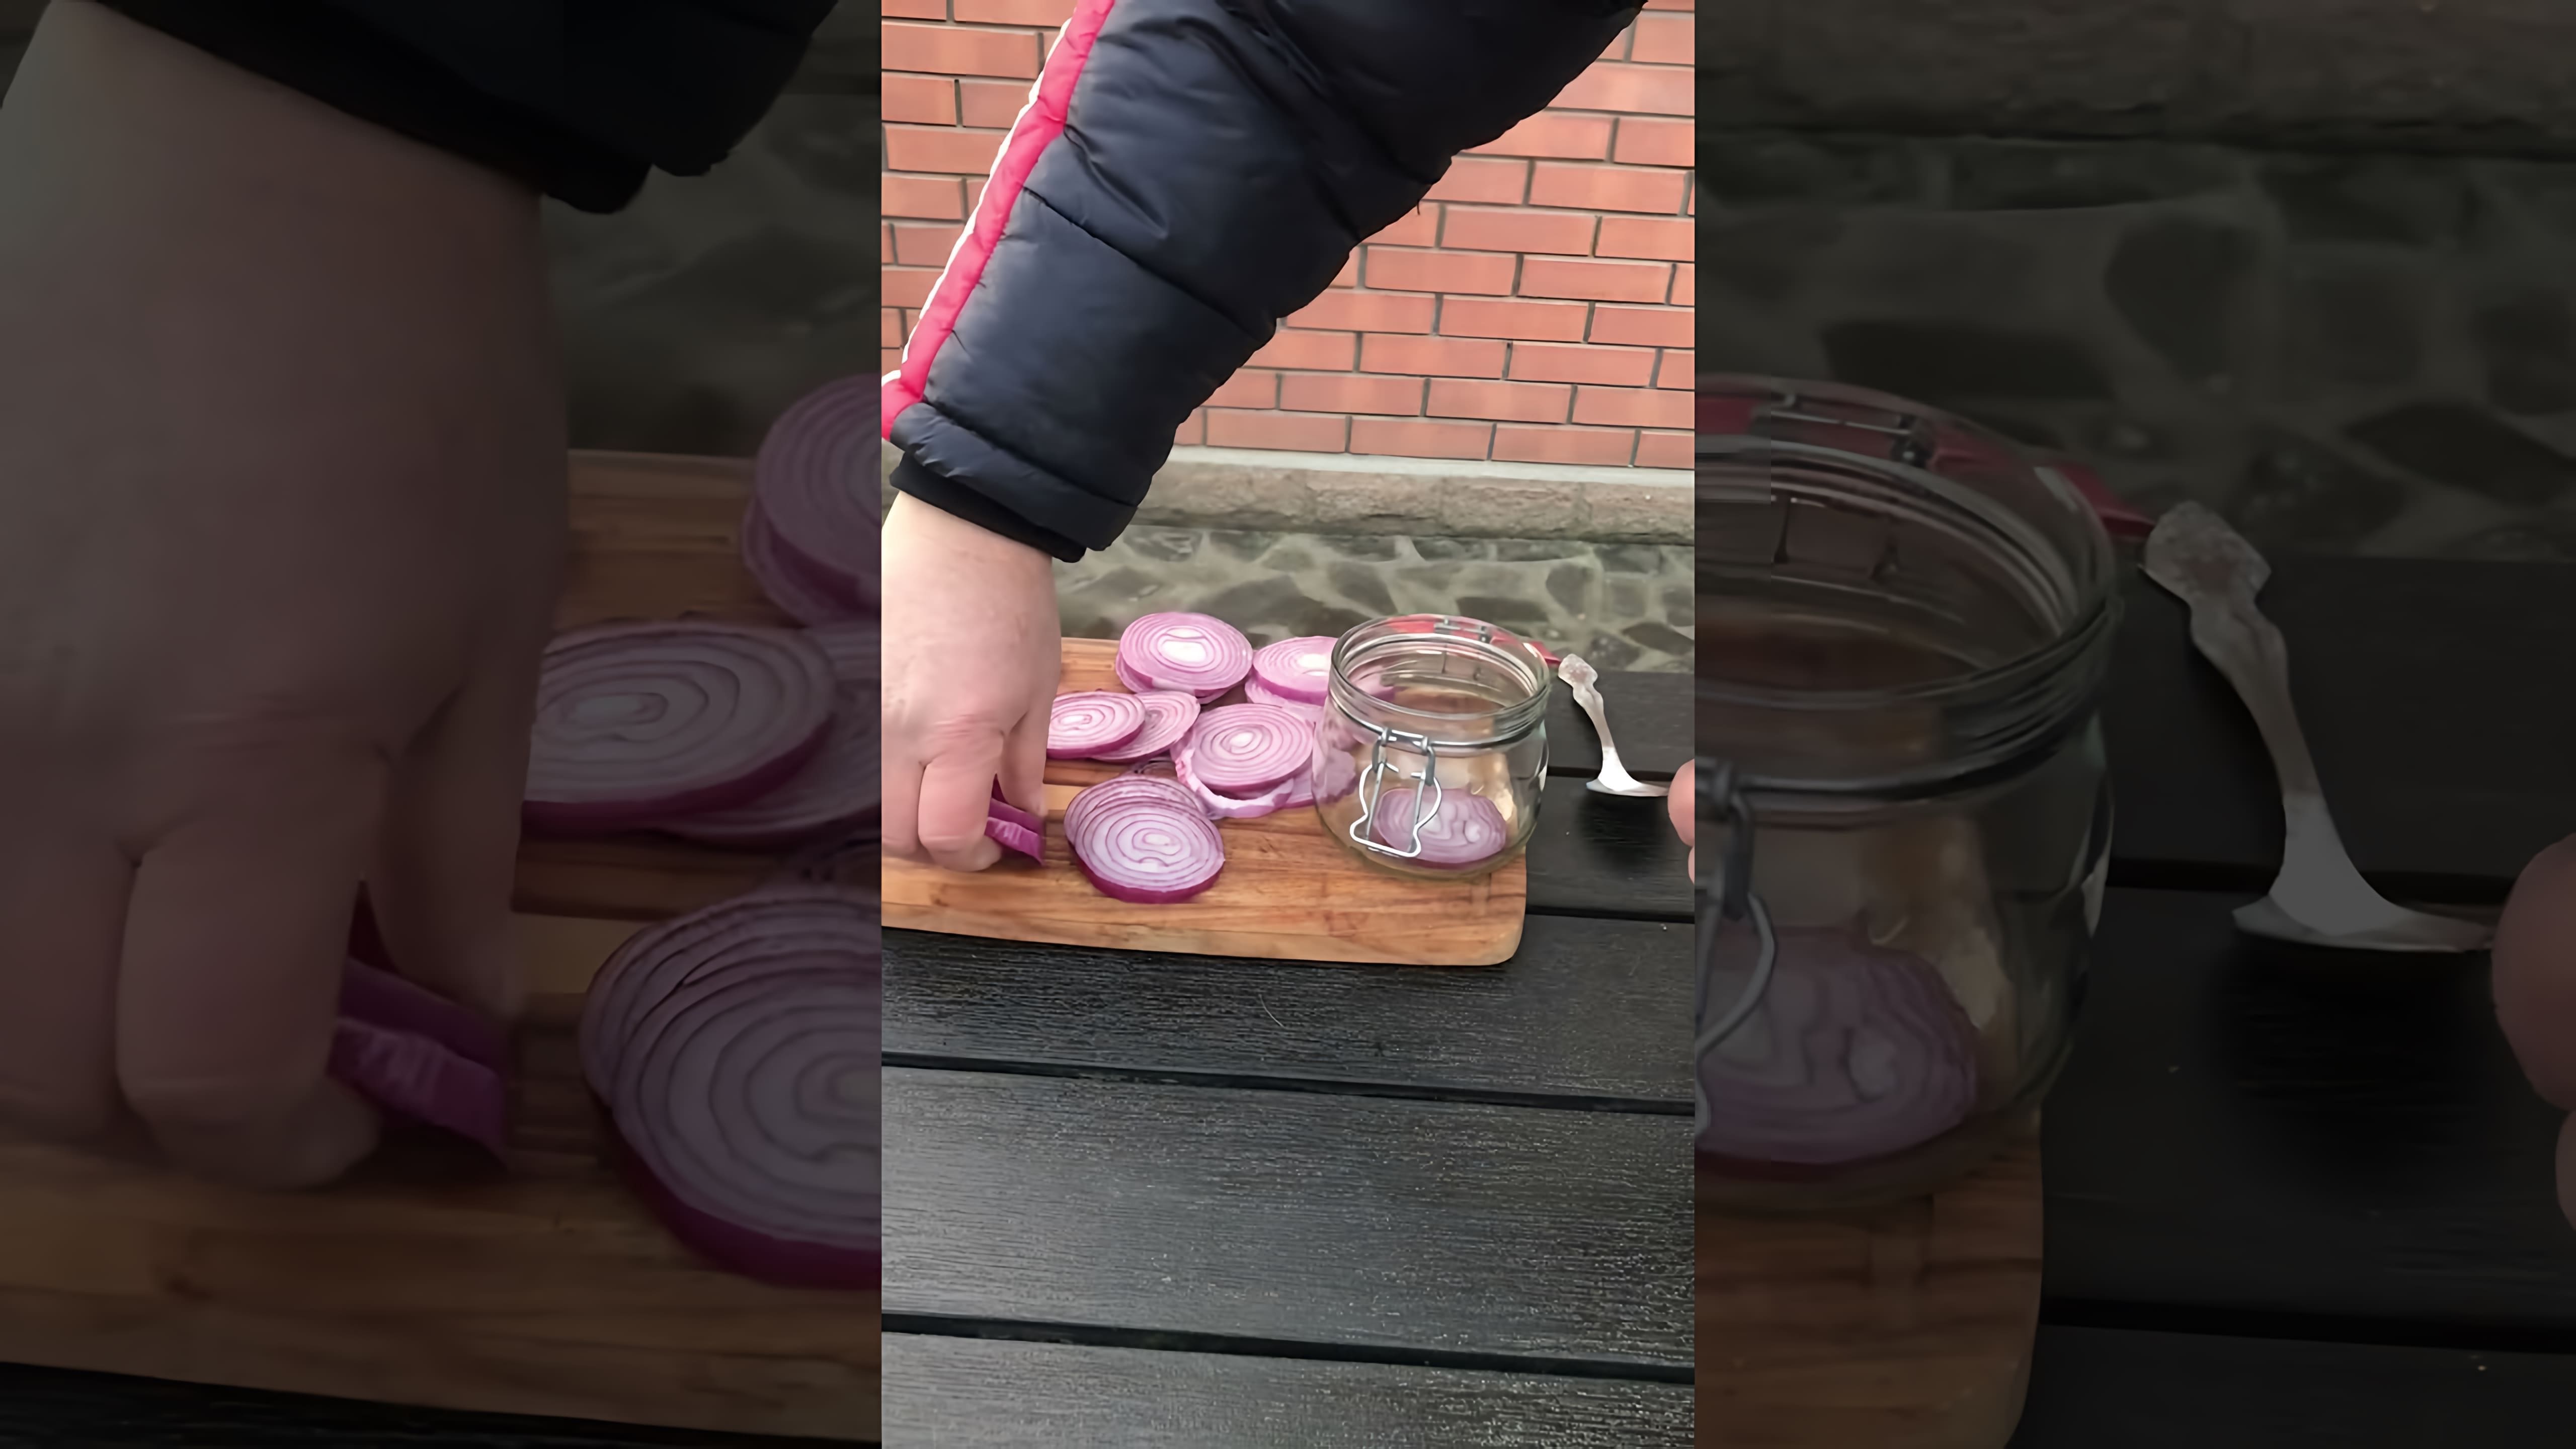 В этом видео демонстрируется простой и быстрый способ приготовления маринованного лука, который может стать отличной закуской к мясу